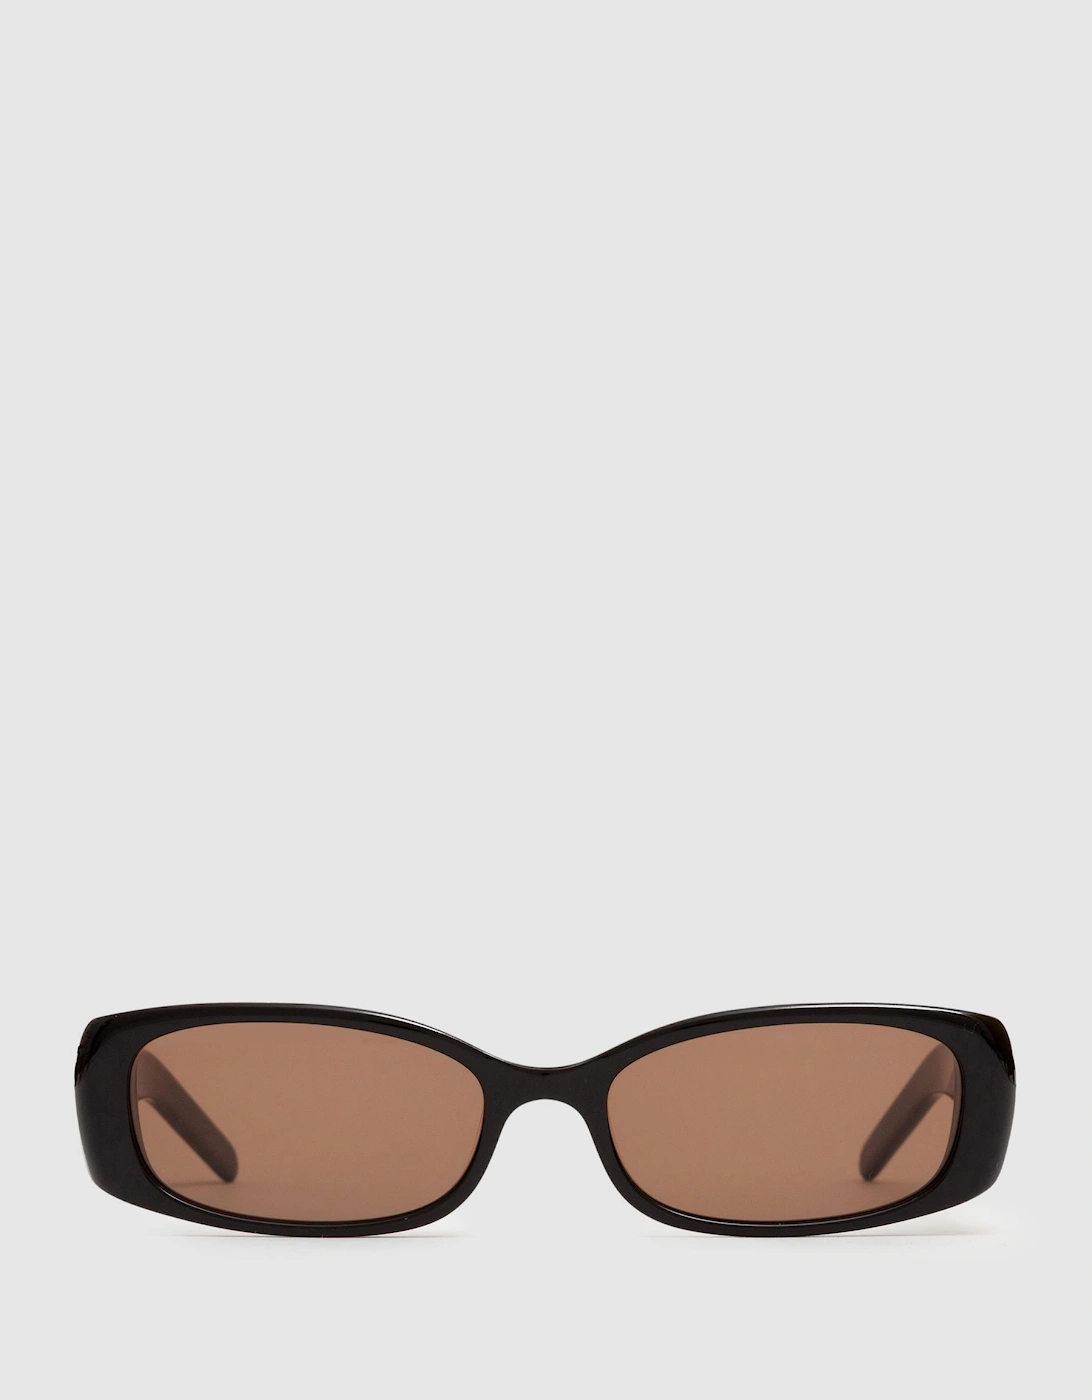 DMY Studios Rectangular Sunglasses, 2 of 1